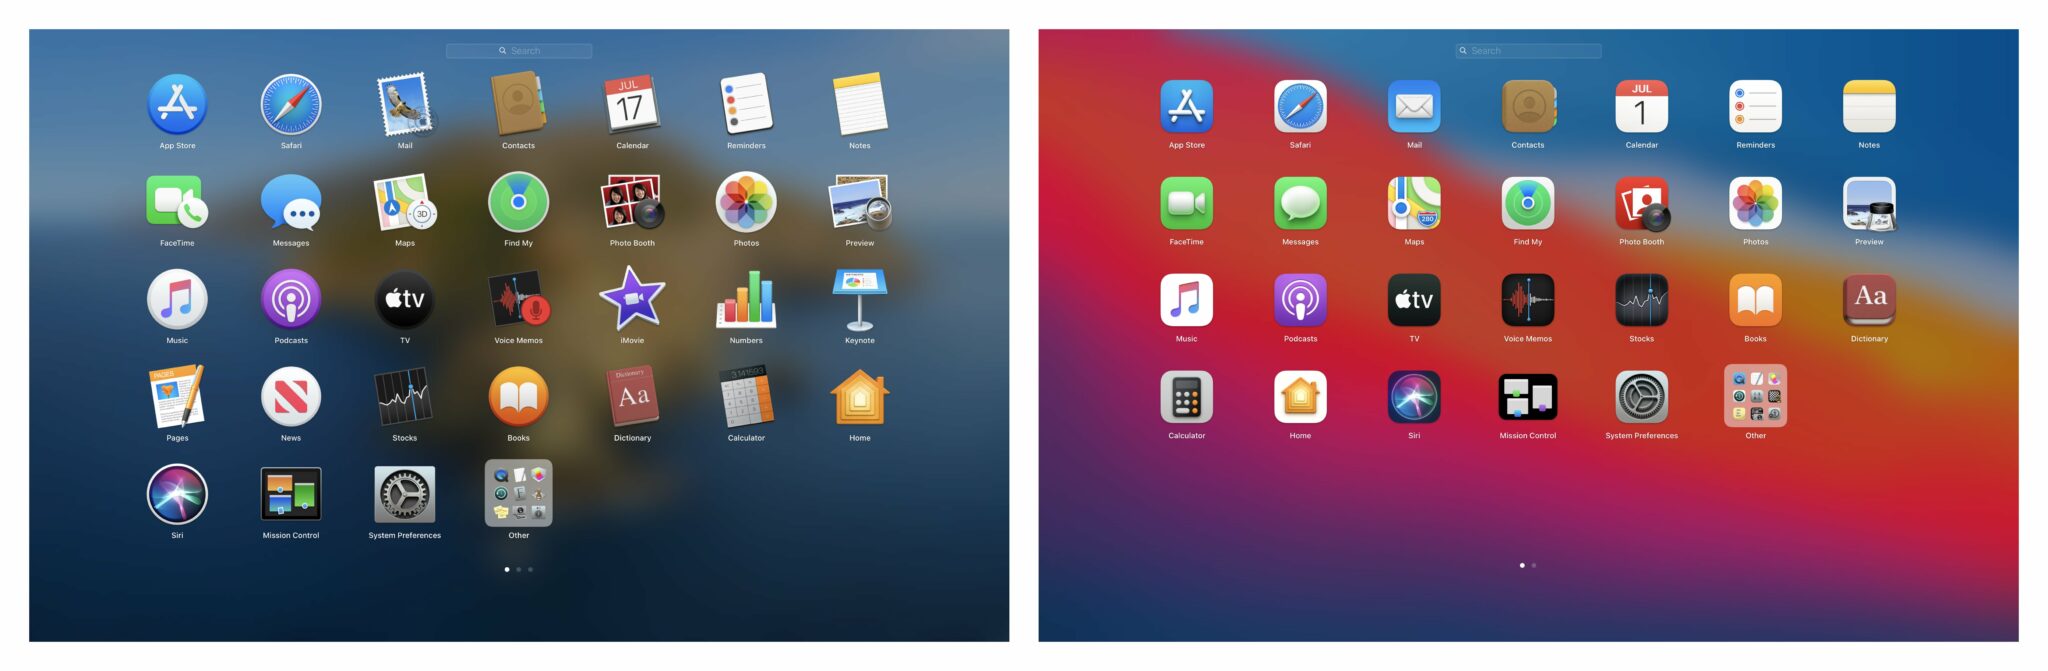 Apple macOS Catalina vs macOS Big Sur - App Launcher